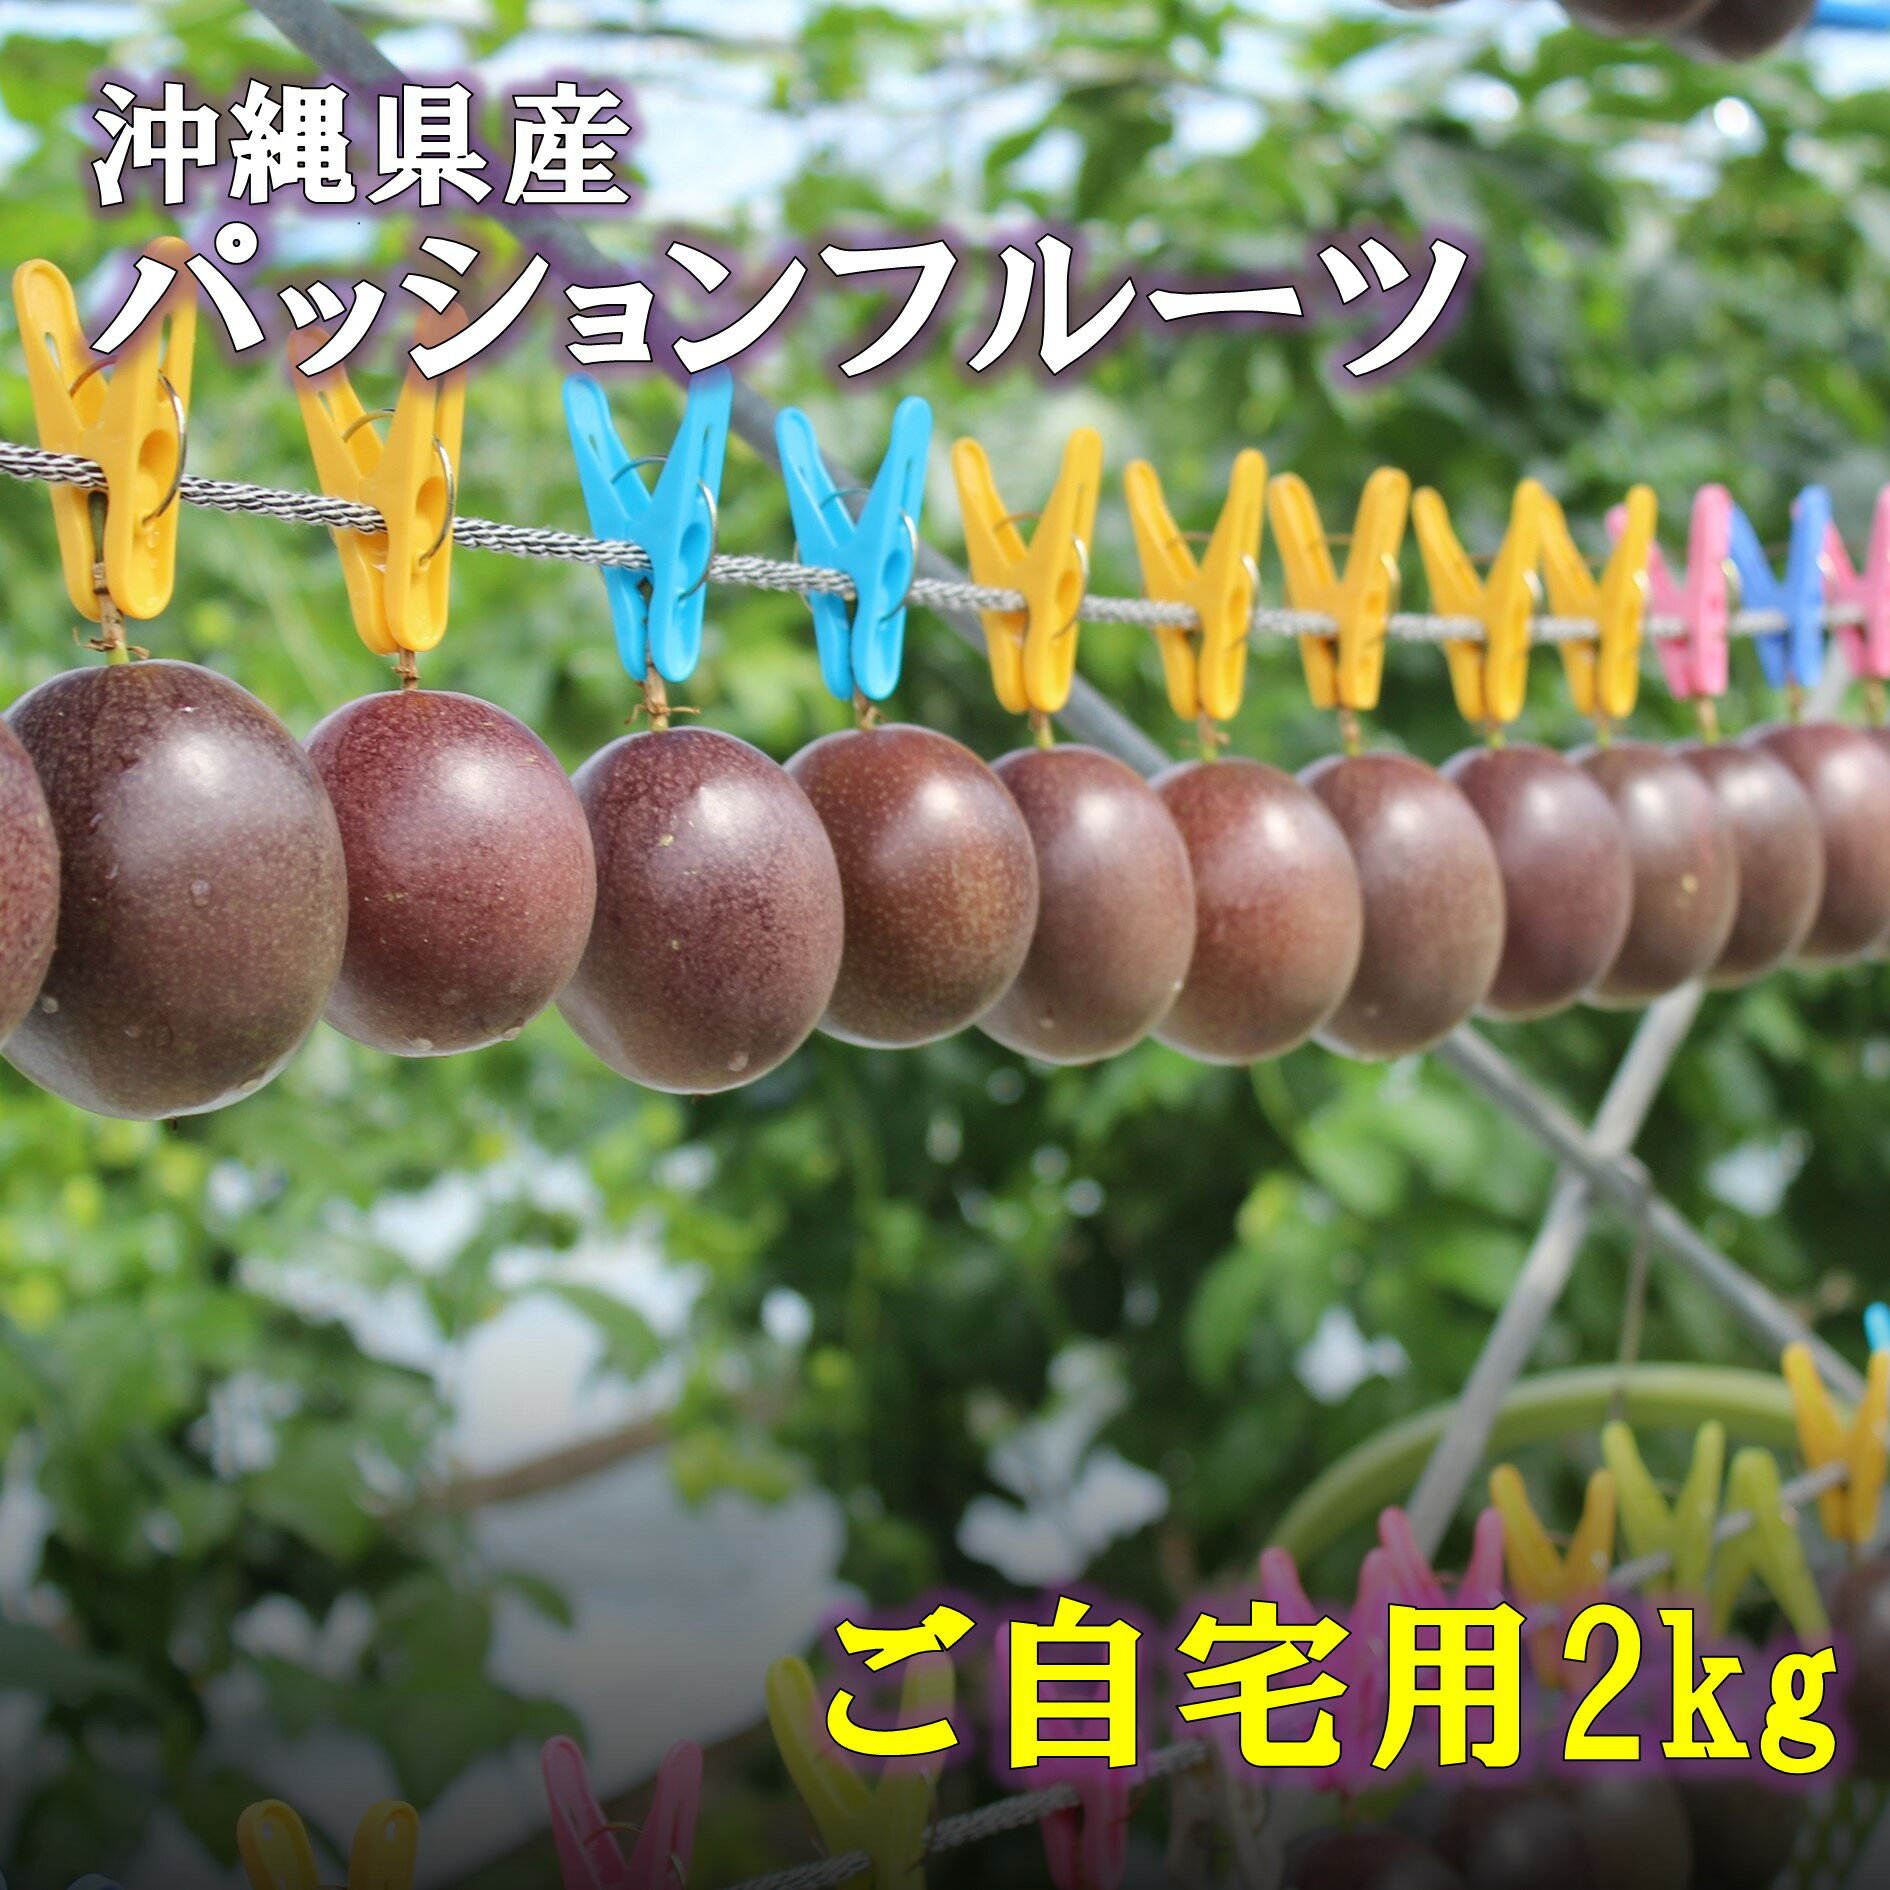 【ふるさと納税】えみちゃん農園 大玉パッションフルーツ(12個入り)